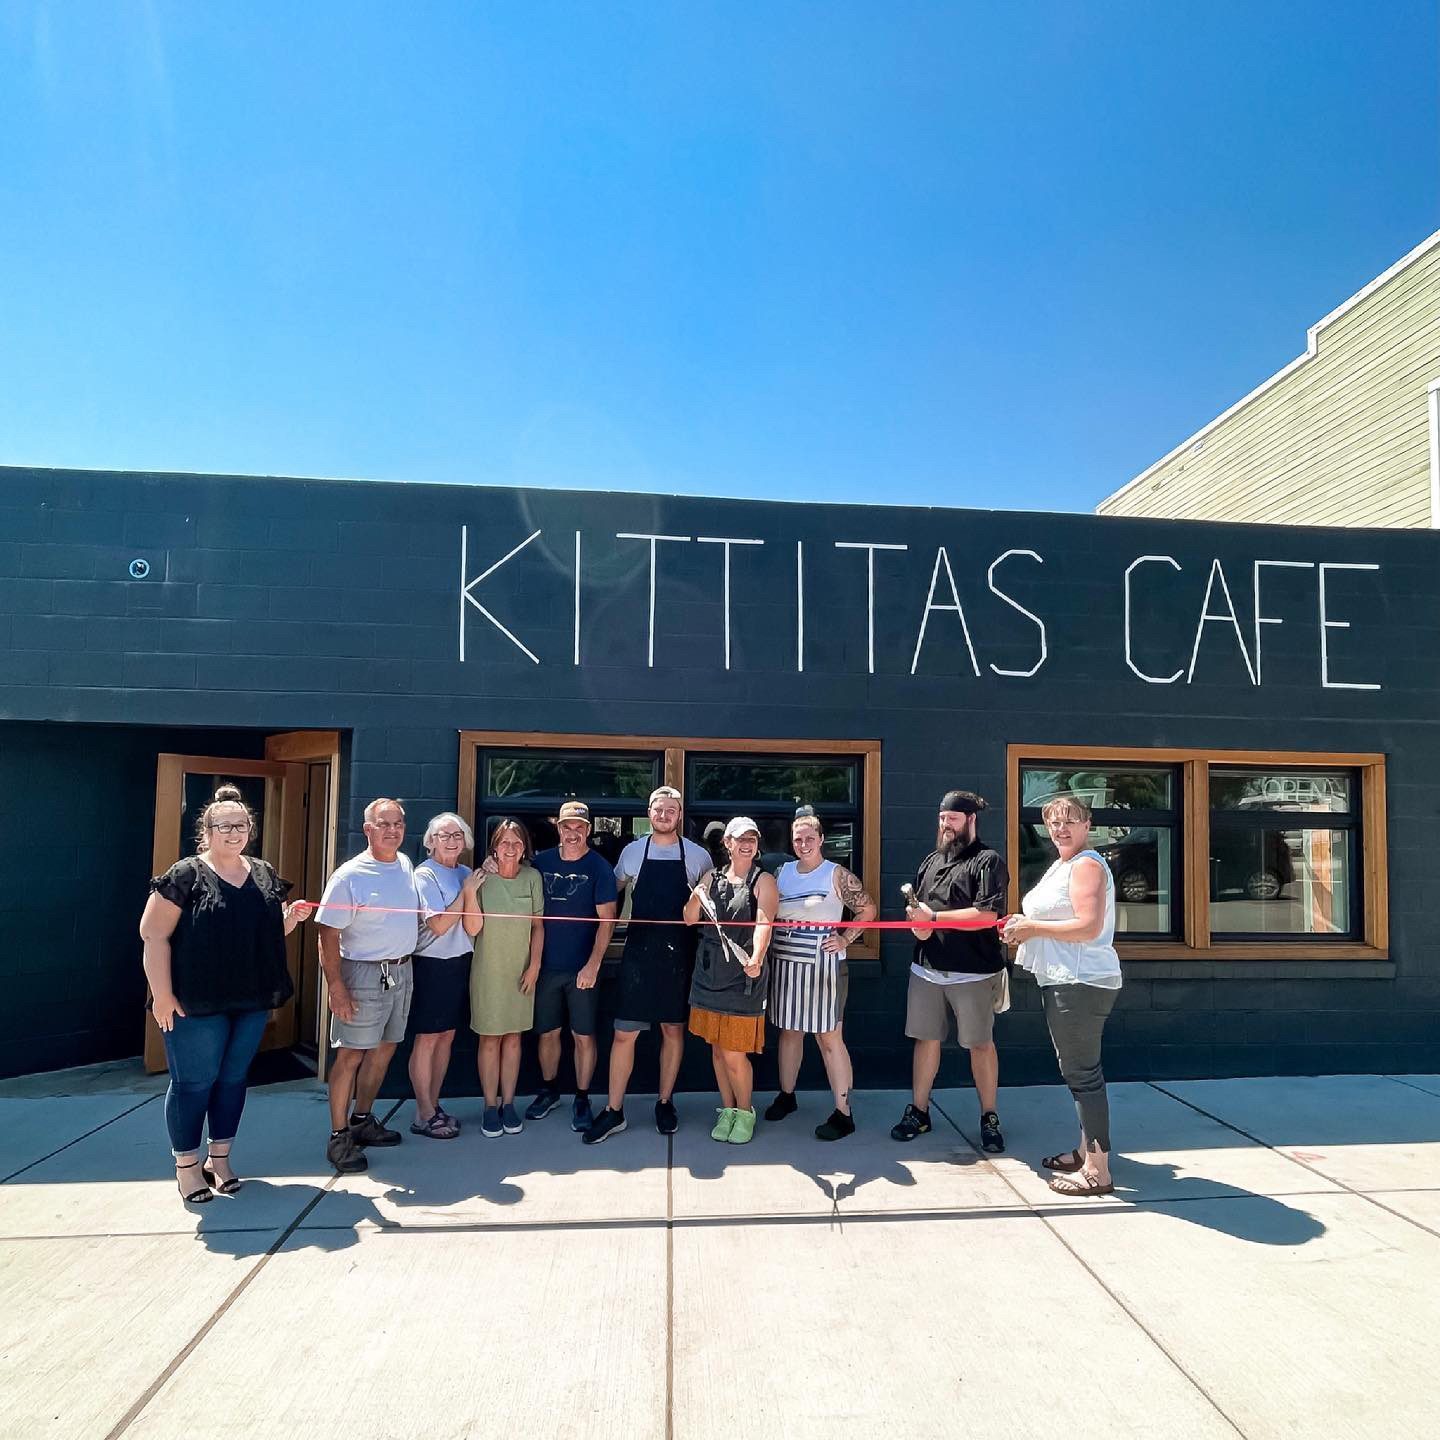 Kittitas Cafe Grand Opening on 6/30/21 - 301 N Main Street, Kittitas